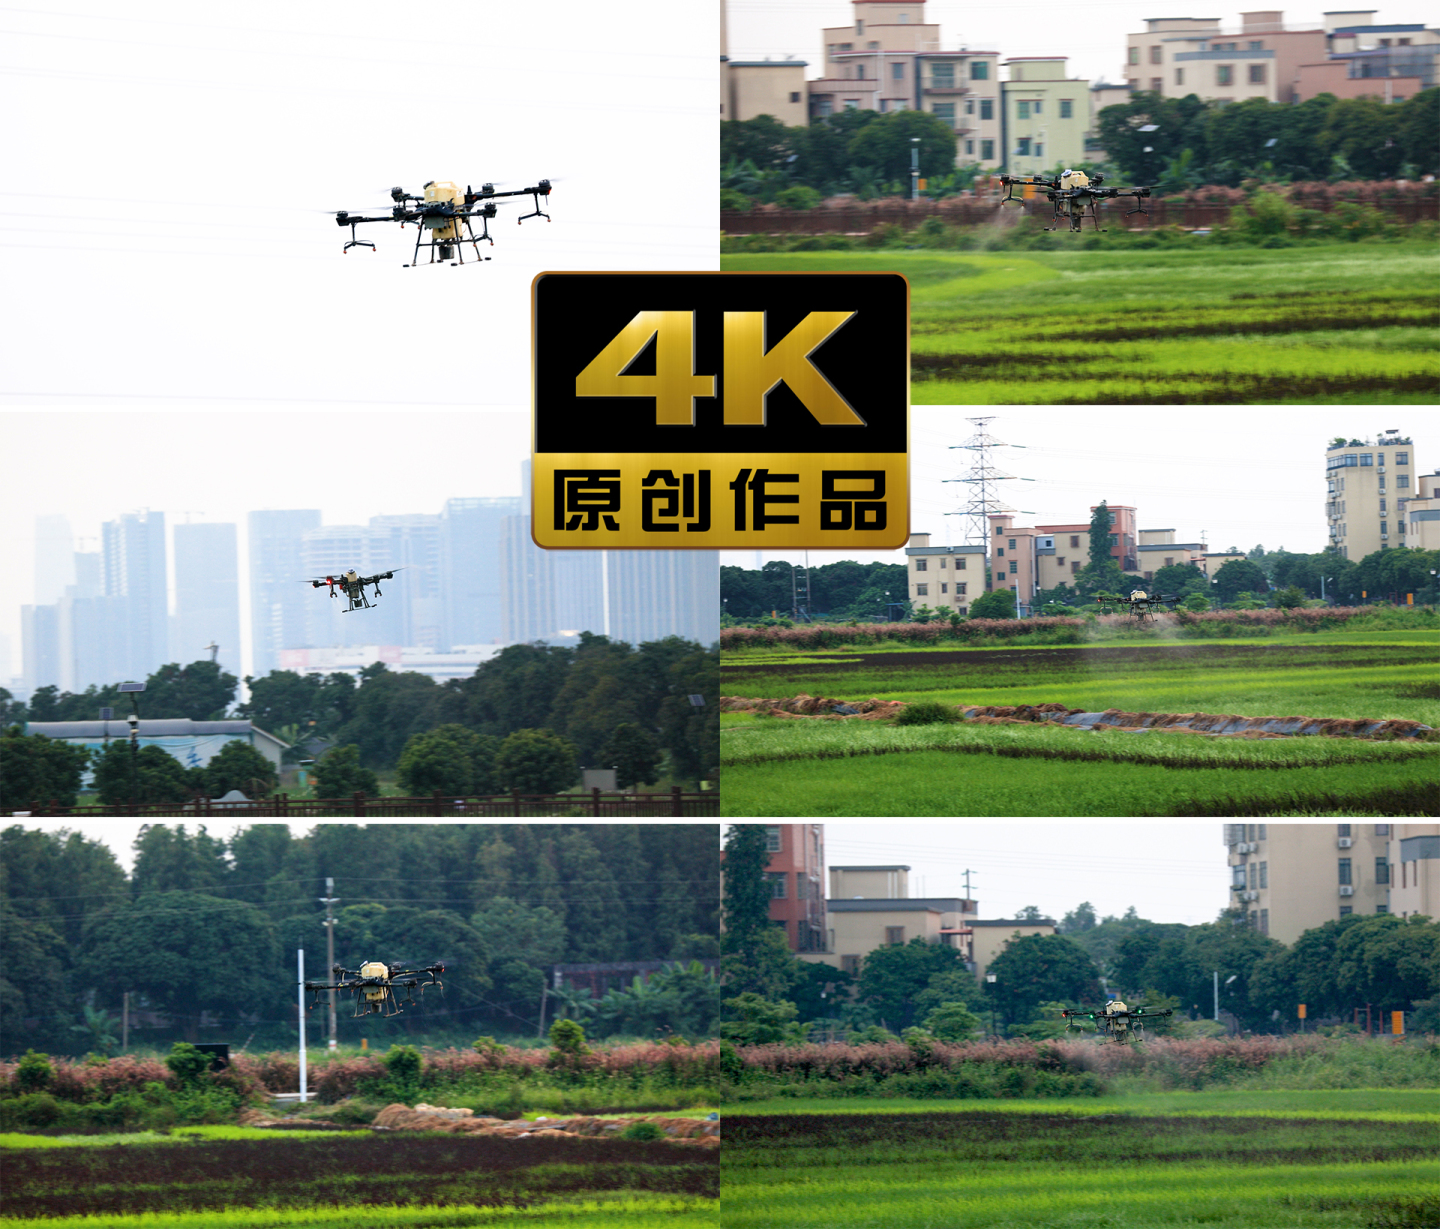 农用无人机在乡村稻田上空喷洒农药